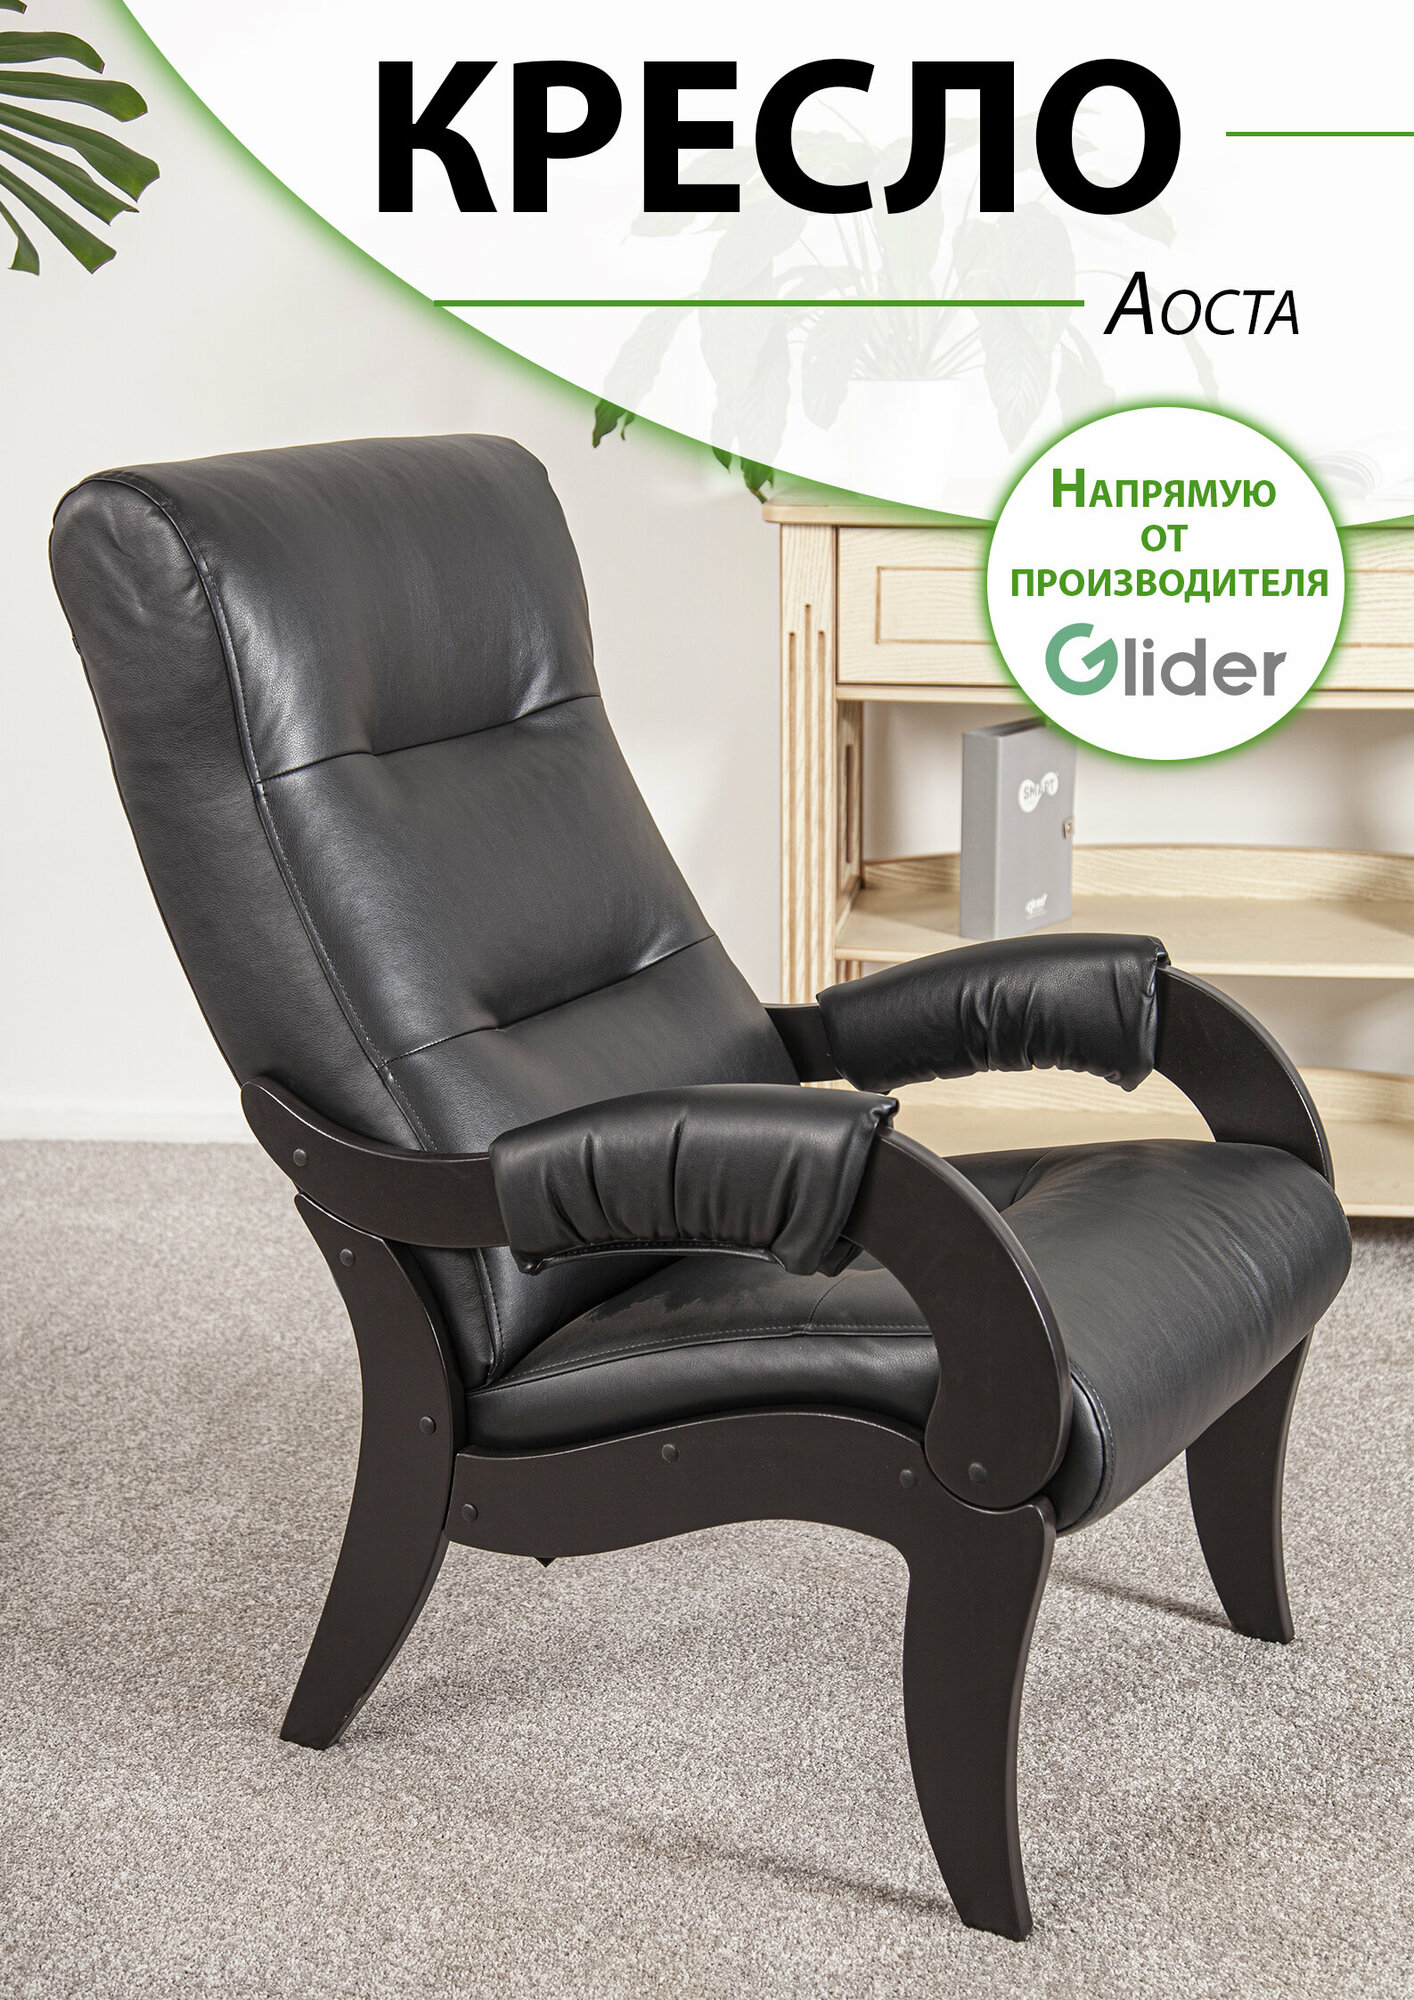 Кресло мягкое для дома и дачи Glider Аоста из эко-кожи, цвет черный, со спинкой для взрослых мягкое мебель для гостиной кухни прихожей дачи, в подарок